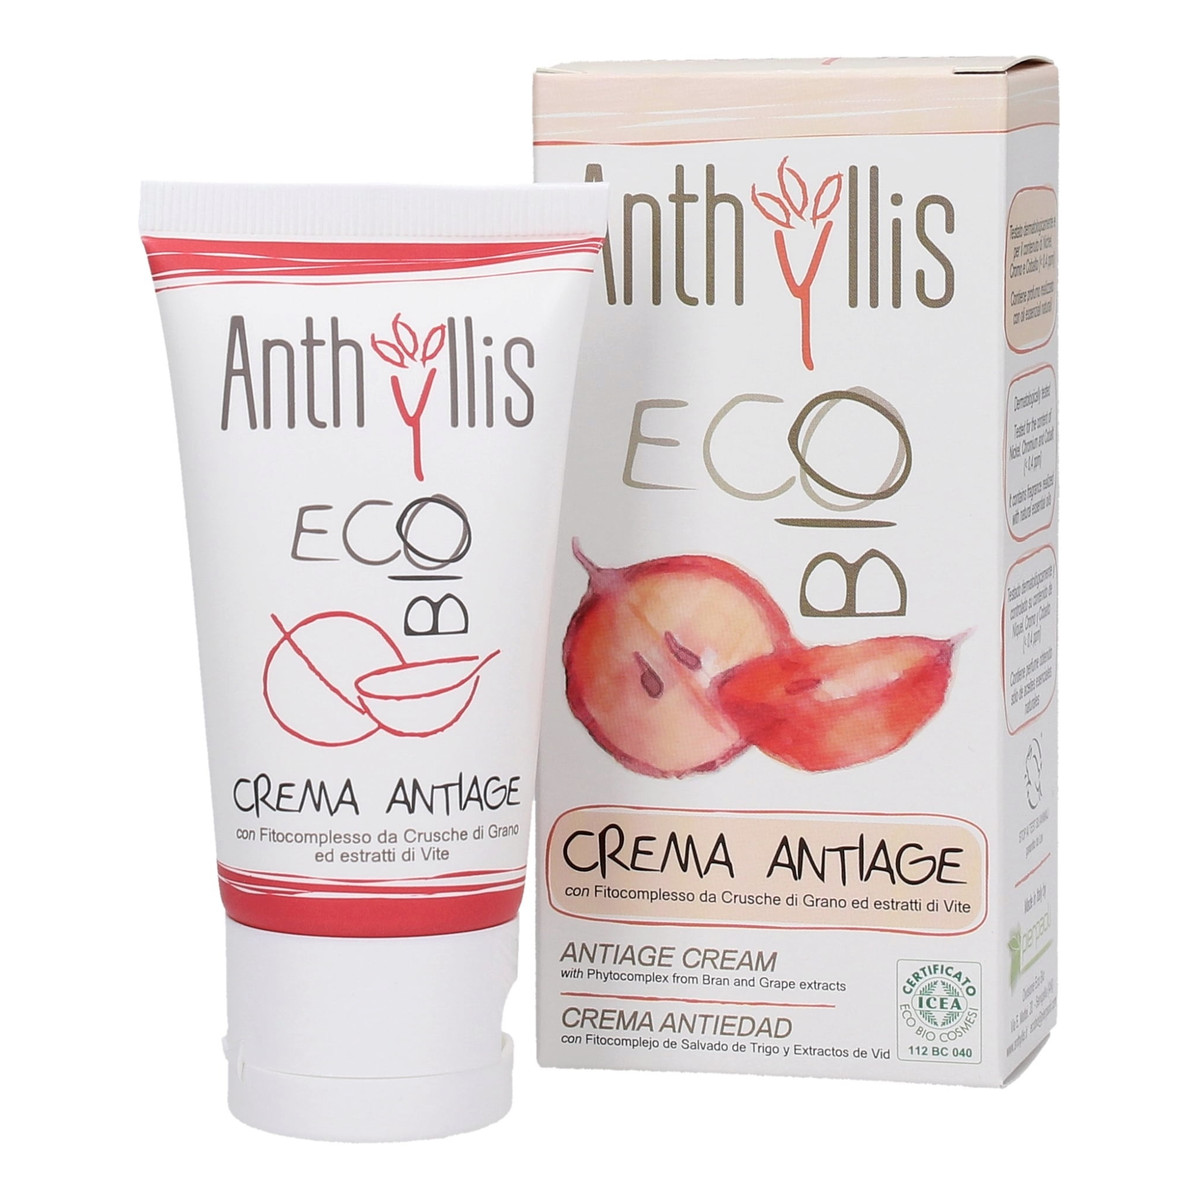 Anthyllis Eco przeciwzmarszczkowy krem do twarzy 50ml